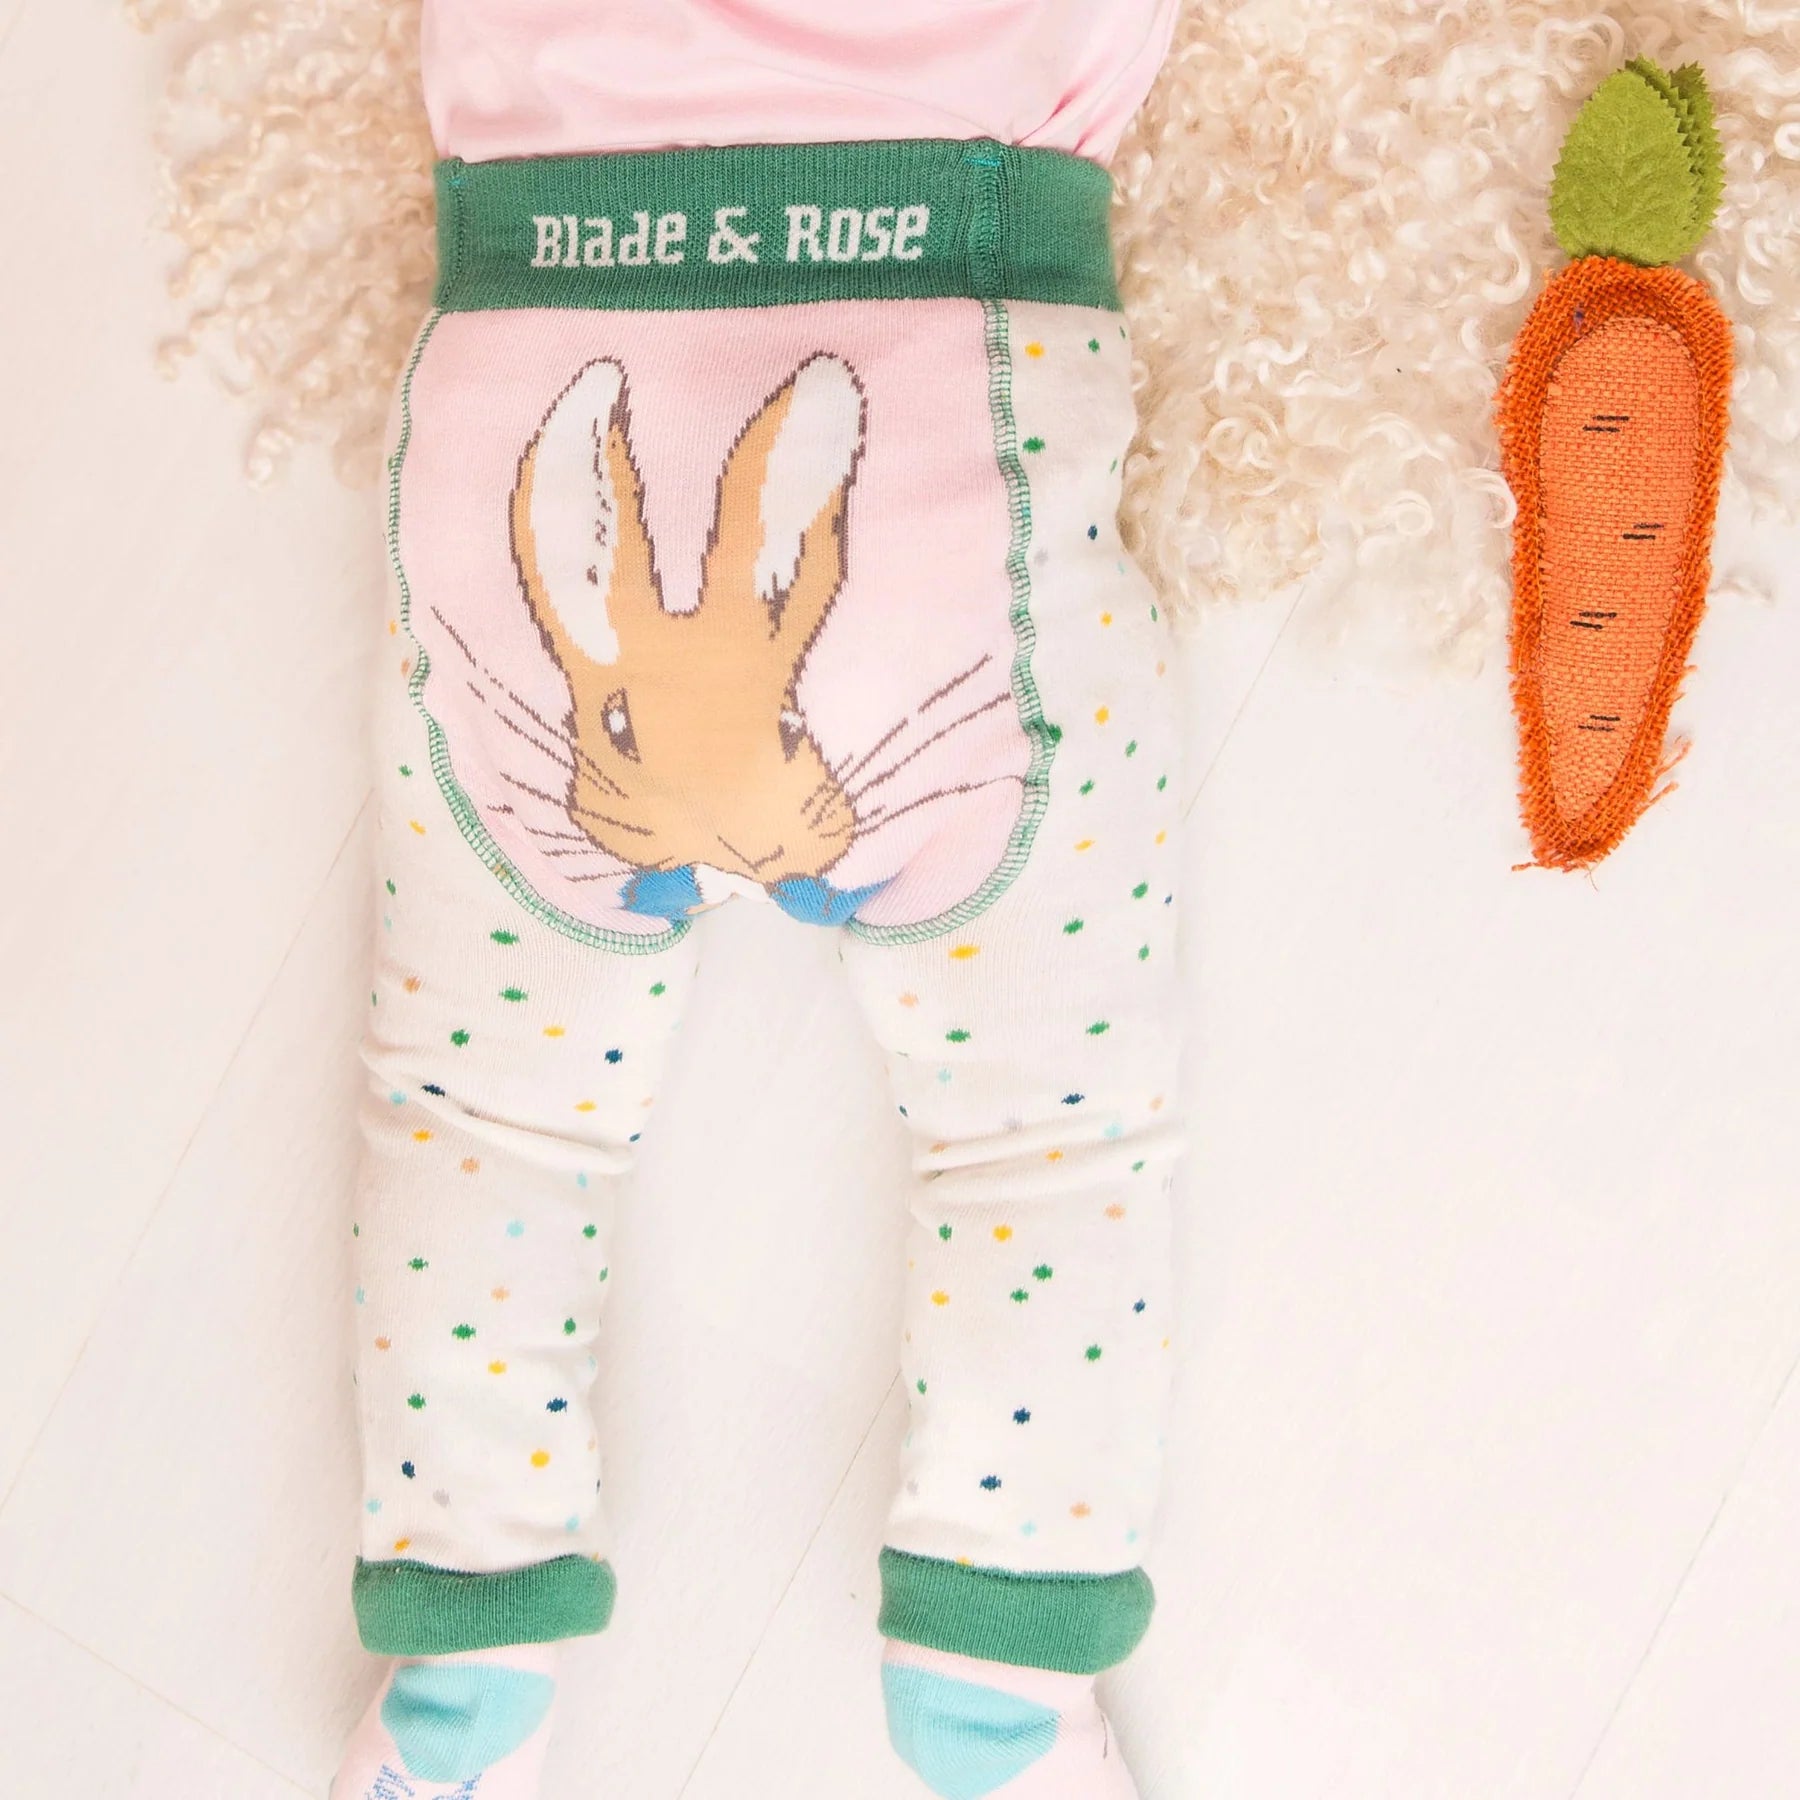 Blade & Rose Peter Rabbit Pretty Garden Leggings Clothing 0-6M / Pale Pink,6-12M / Pale Pink,12-24M / Pale Pink